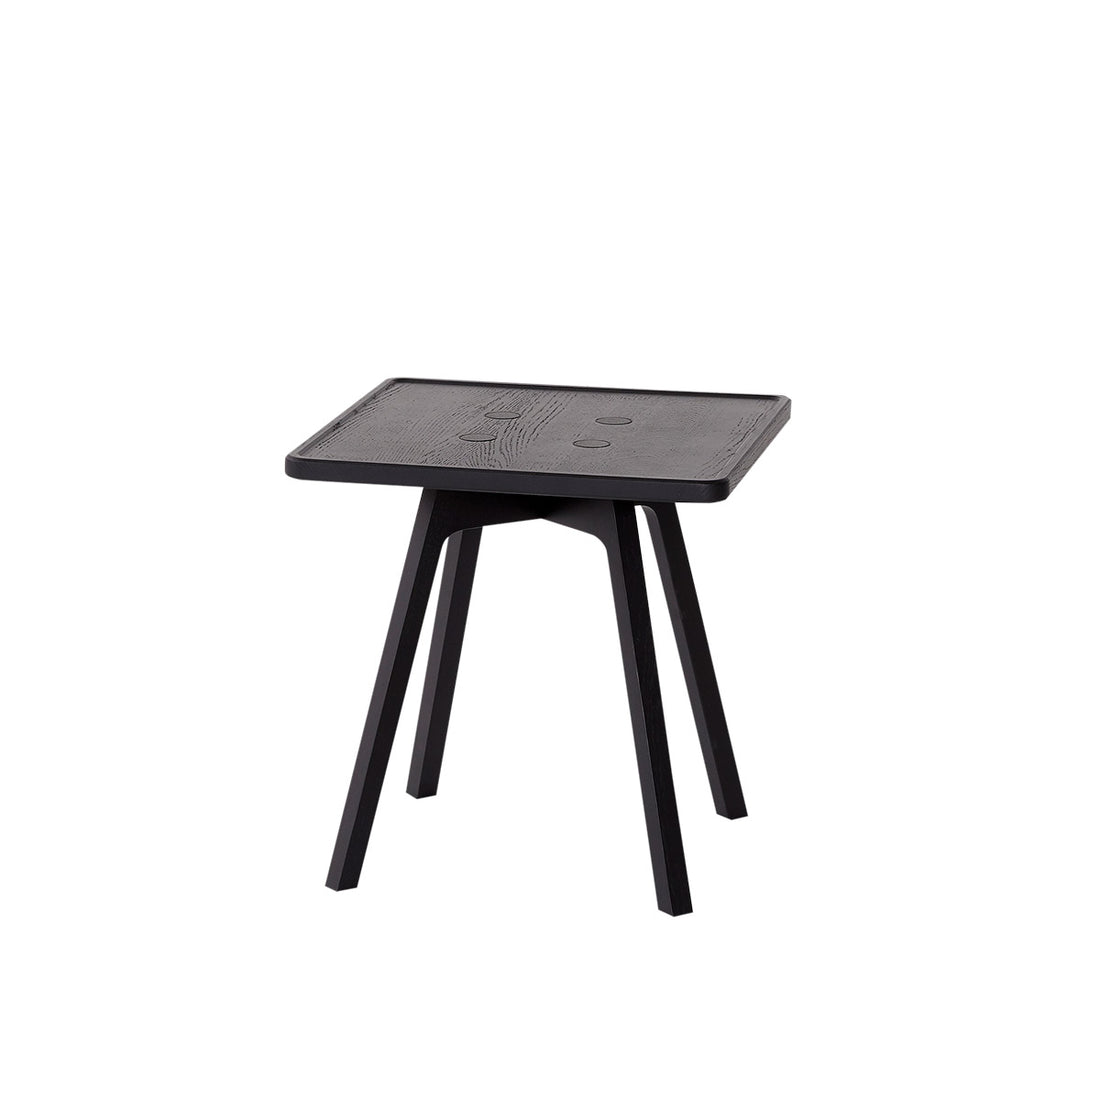 Andersen Furniture C2 sofabord - sort - 43x43xH43,5 cm - DesignGaragen.dk.